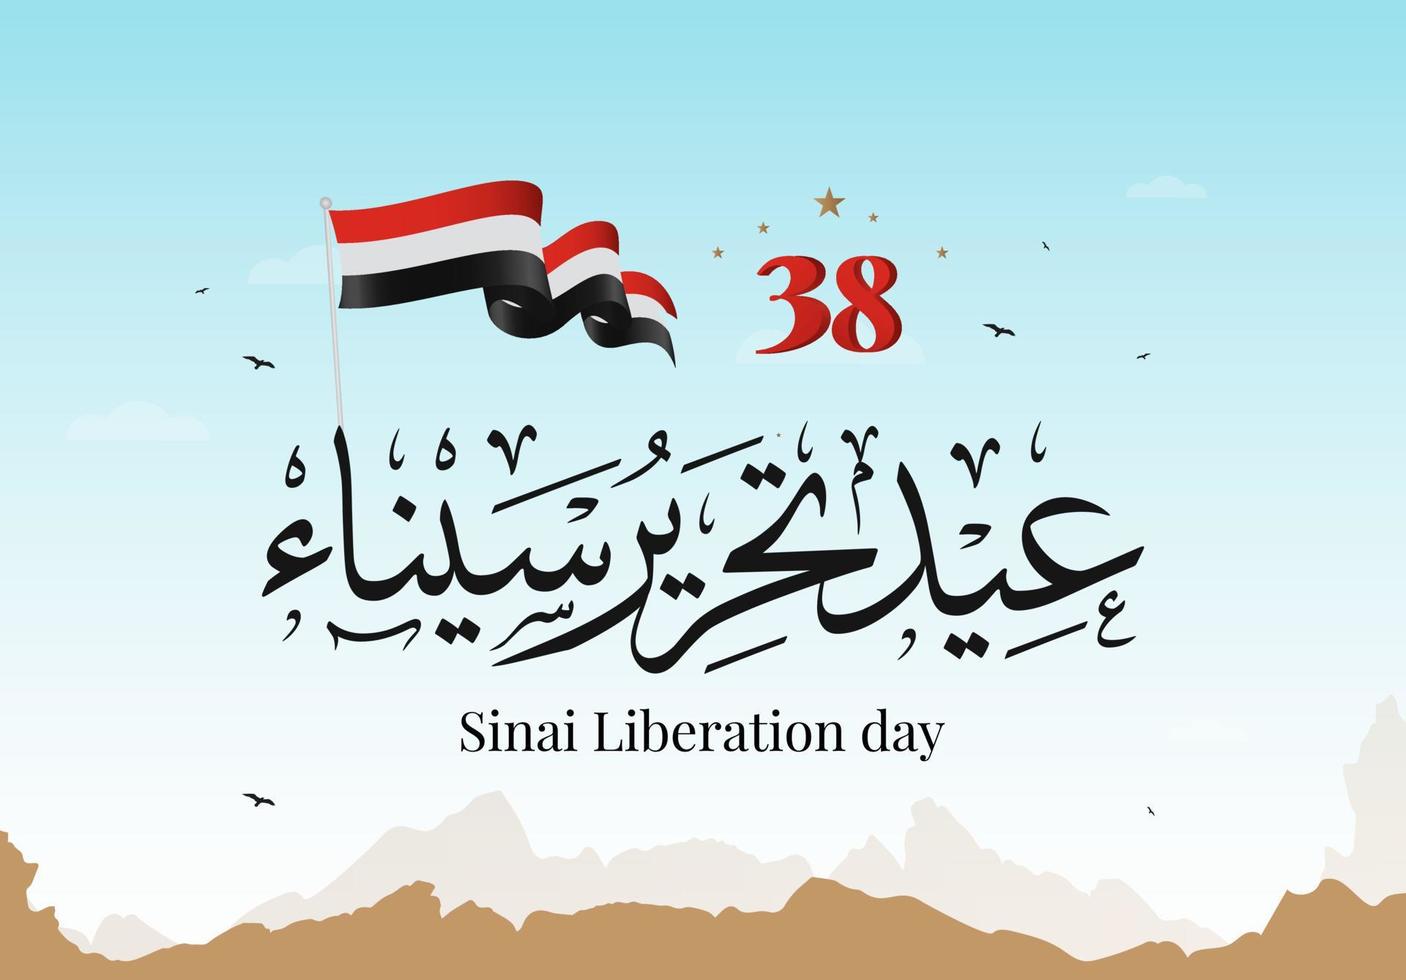 Egitto 6 ottobre guerra 1973 calligrafia araba illustrazione vettoriale. festa dell'indipendenza del sinai, giorno della liberazione del sinai 25 aprile. vettore